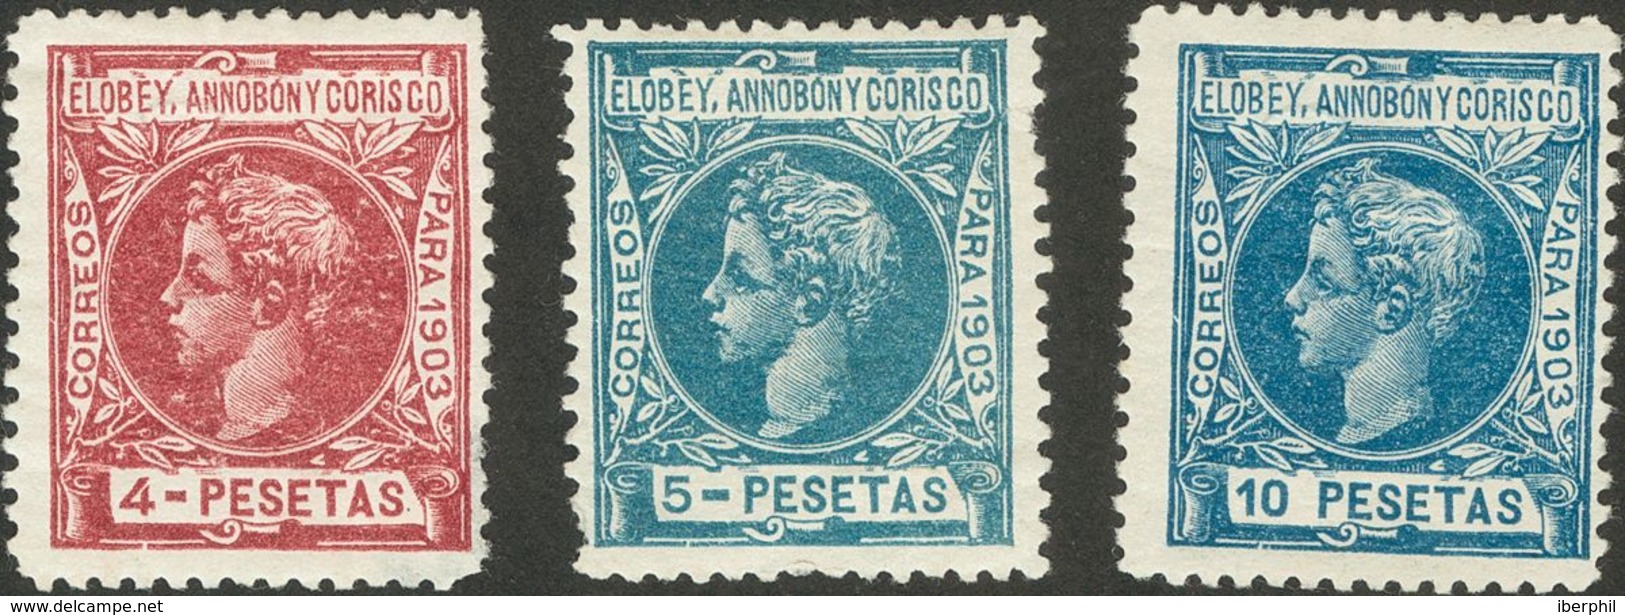 Elobey, Annobón Y Corisco. * 43101 1903. Serie Completa. MAGNIFICA Y RARA. 2018 1050. - Annobon & Corisco